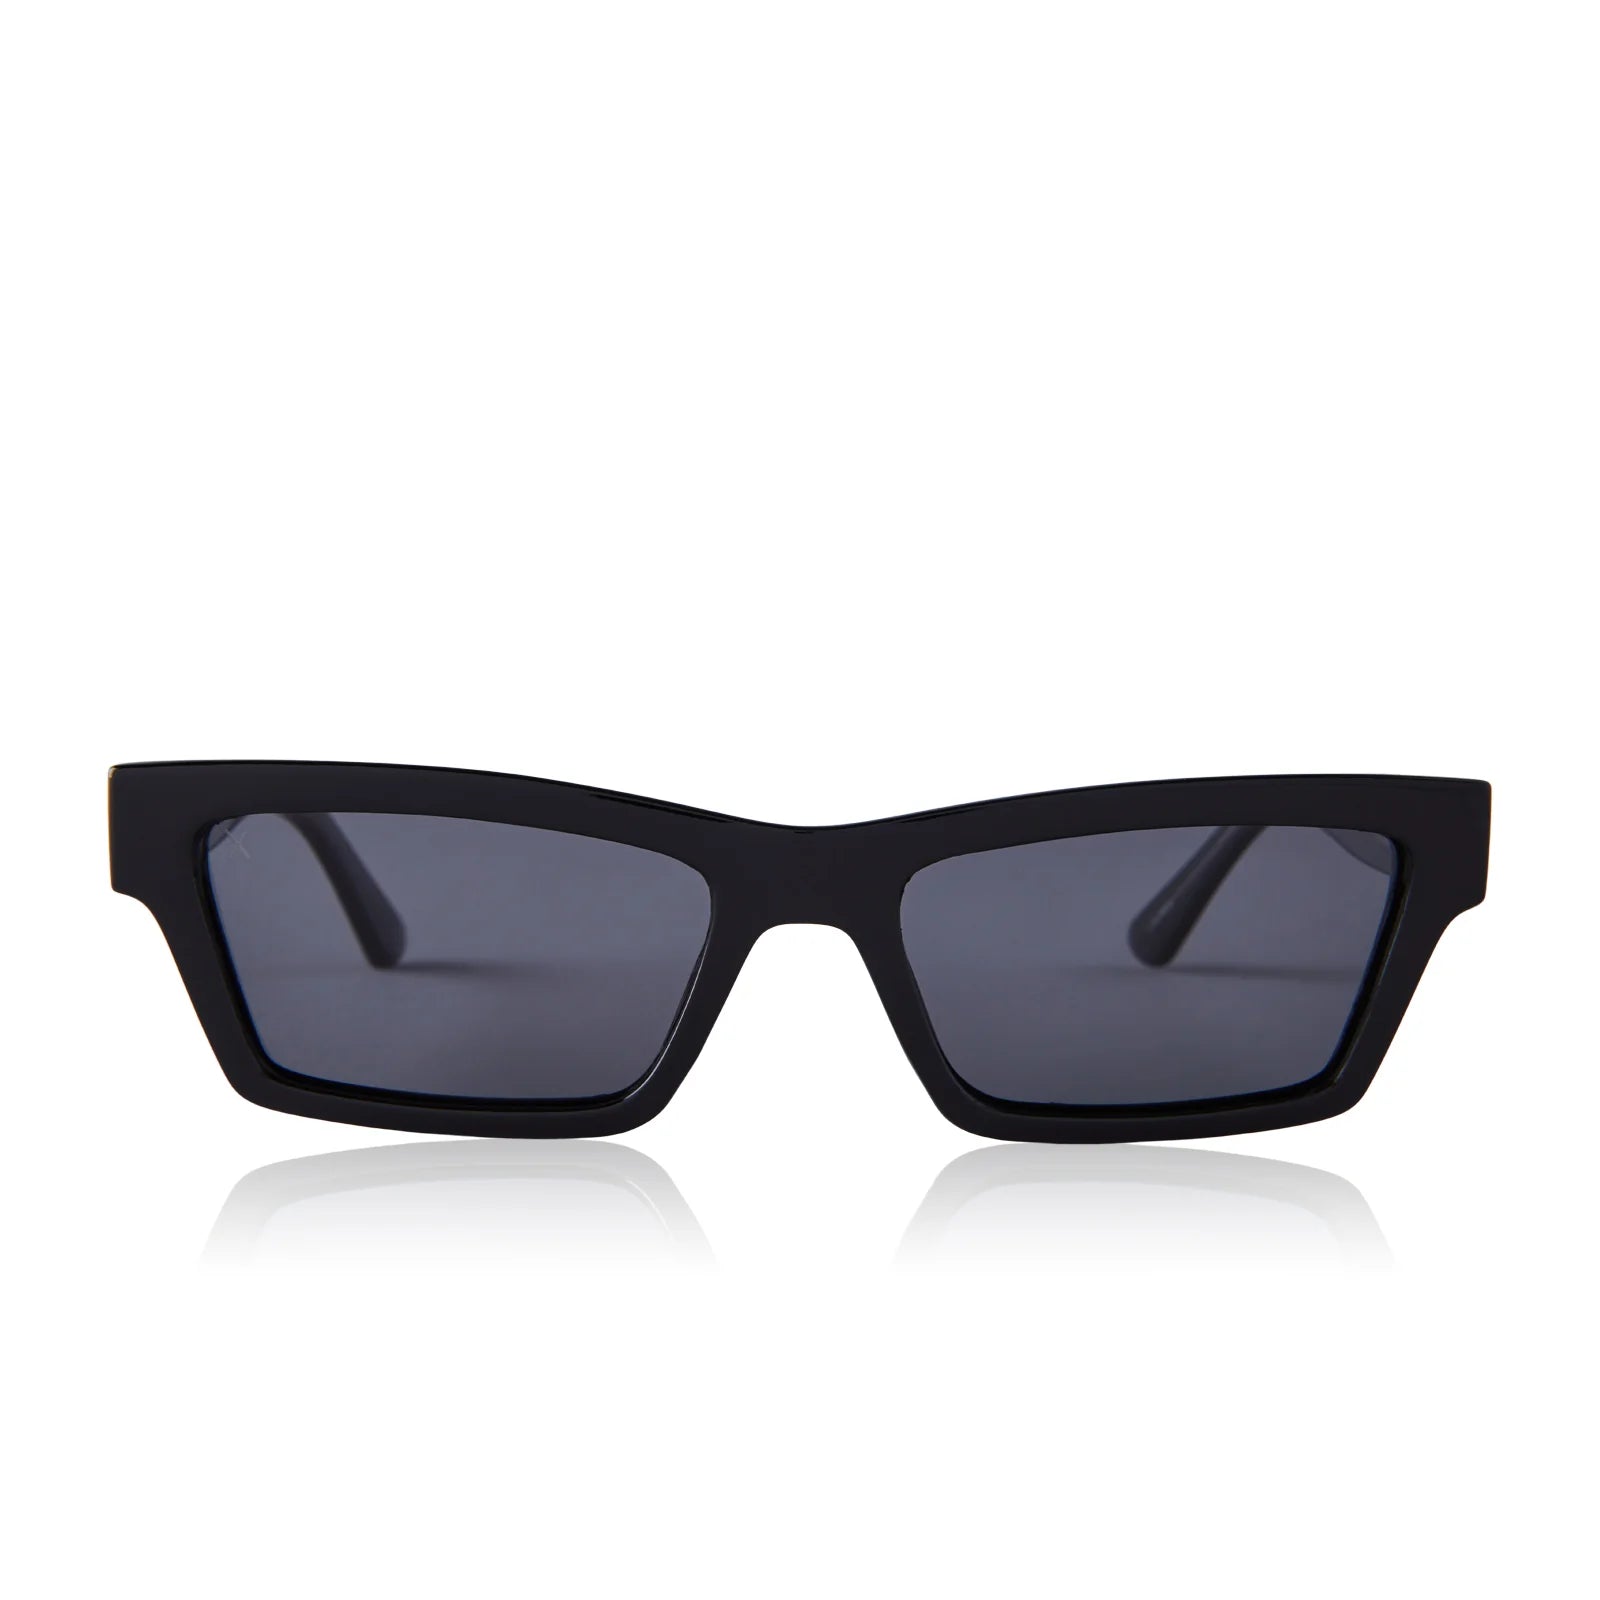 Laurel Polarized Sunglasses